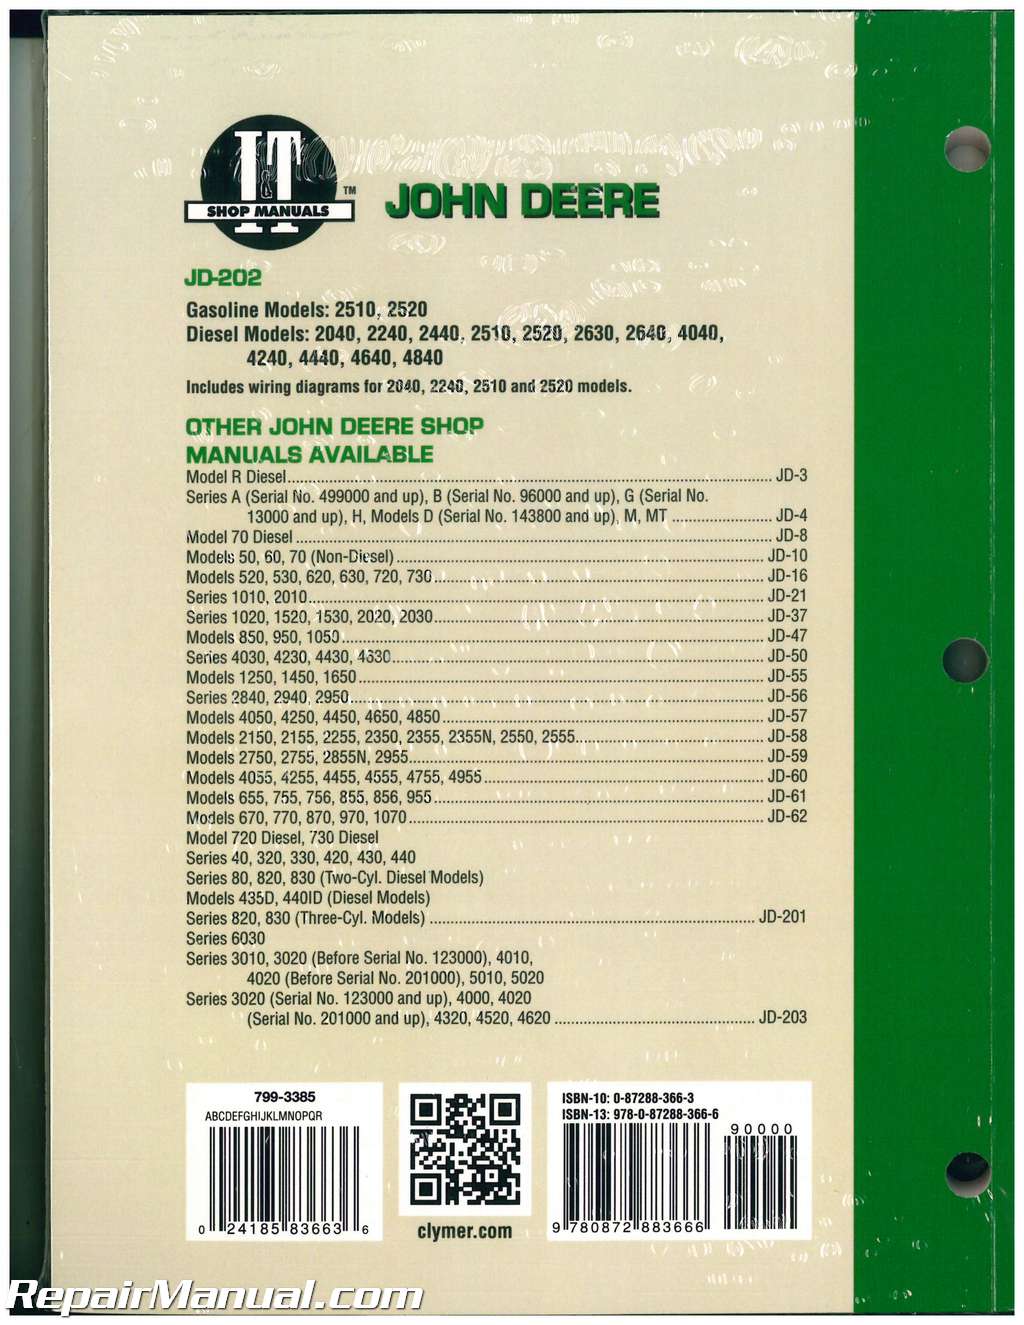 John Deere Tractor Manual 2040 2510 2520 2240 2440 2630 ... jd 2520 wiring diagram 